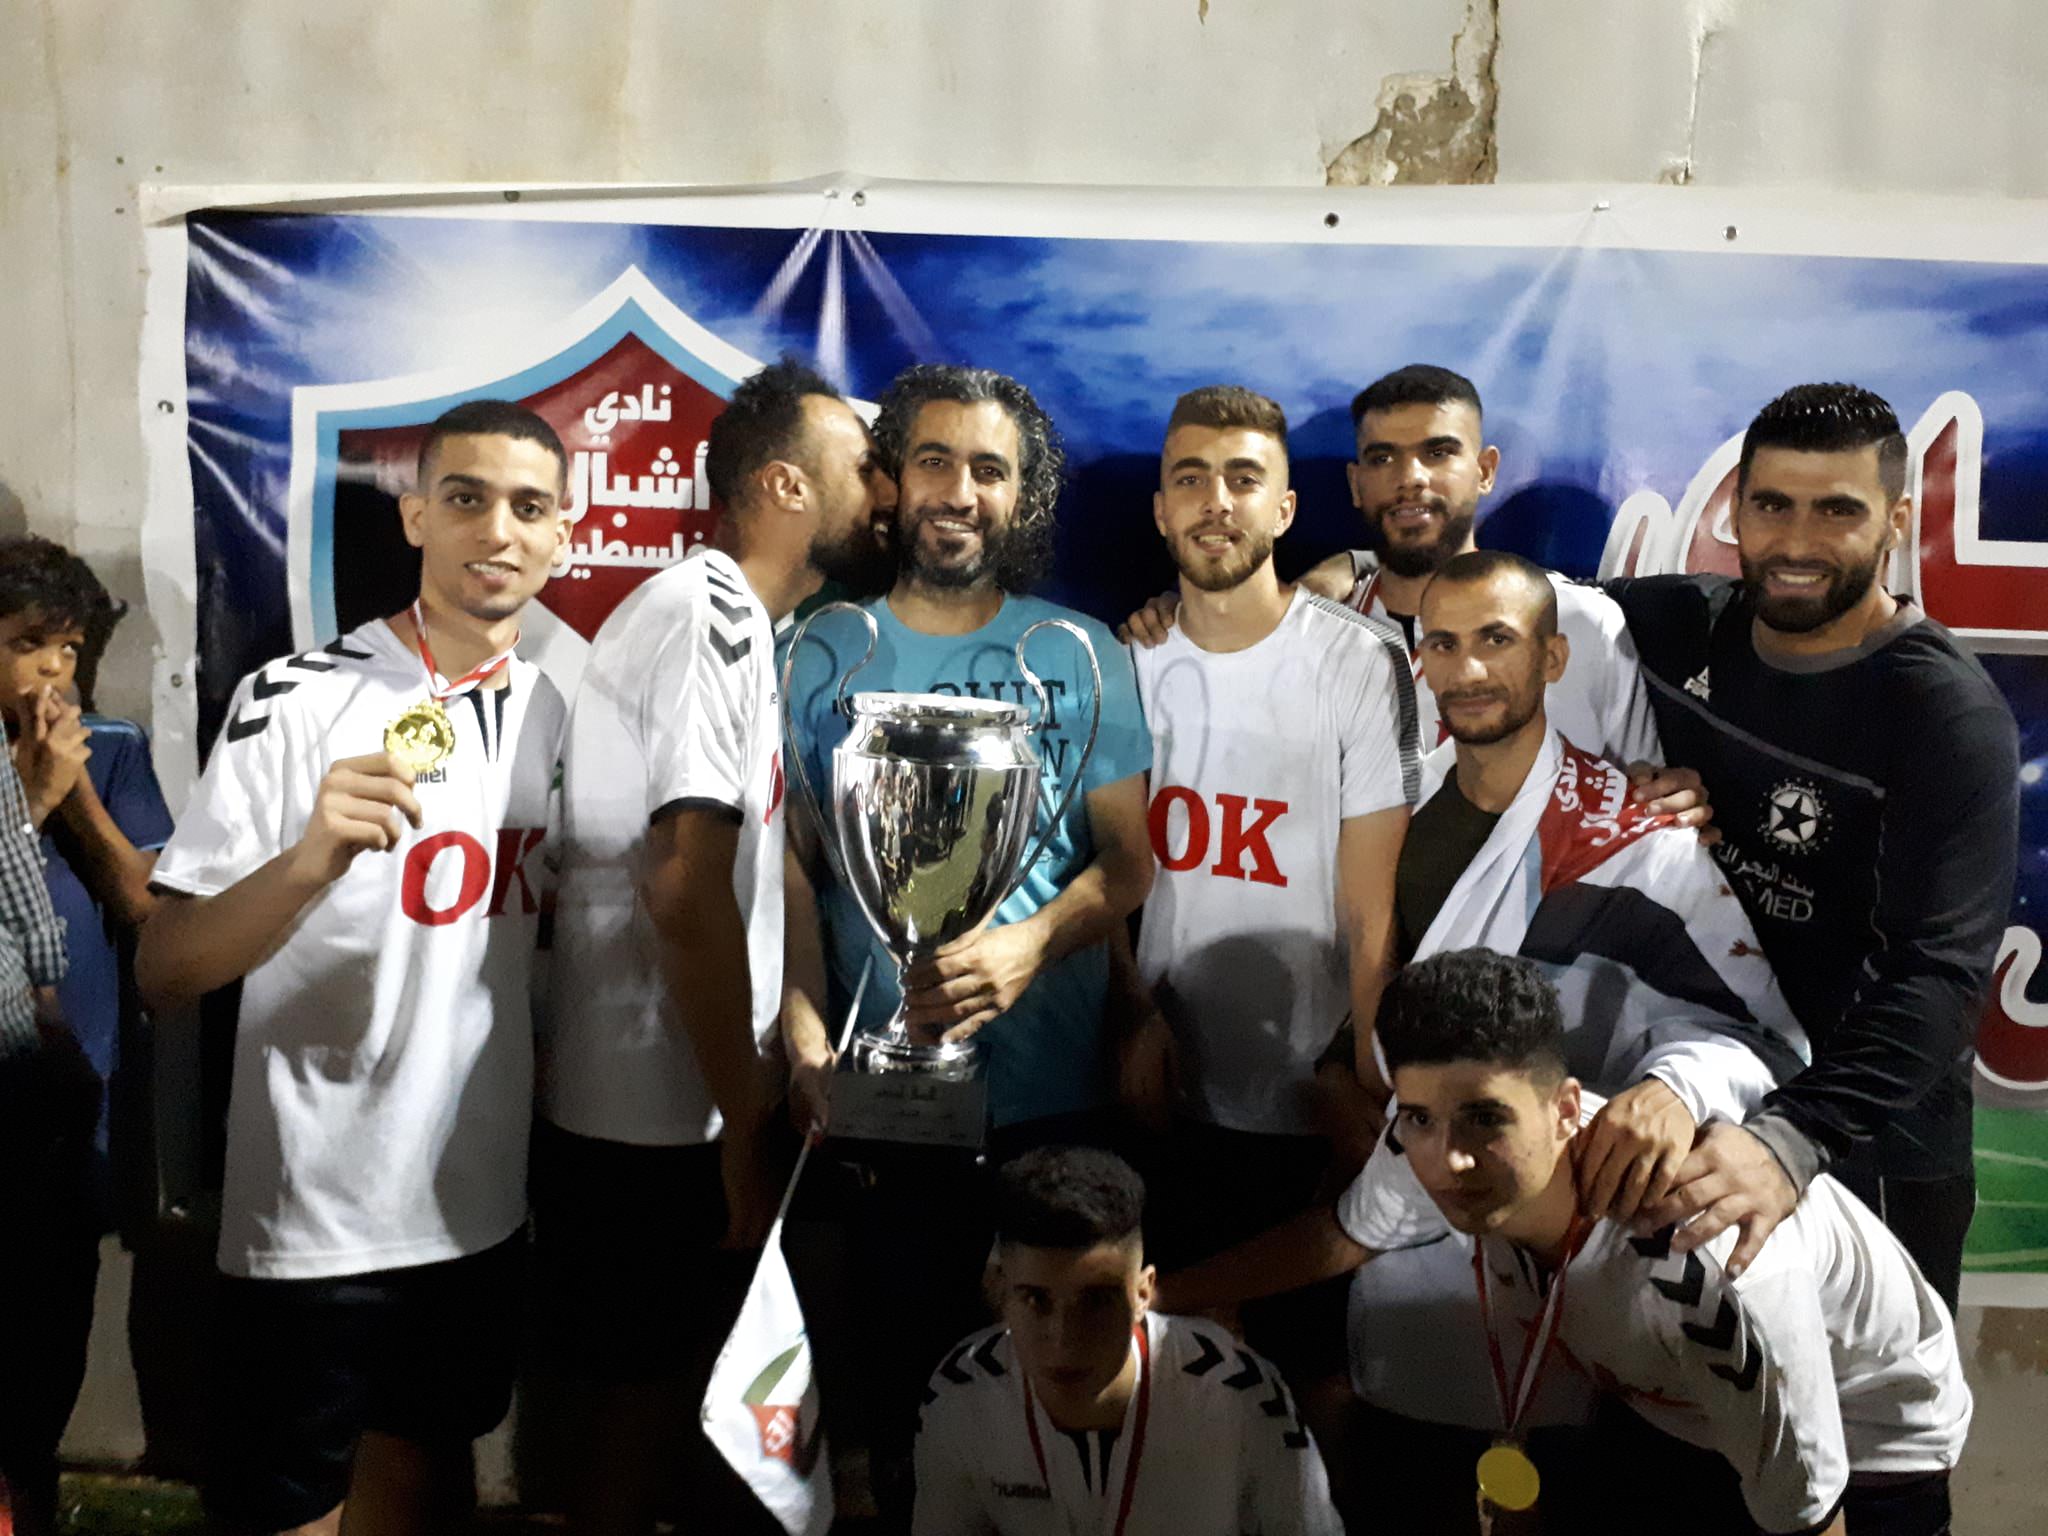 فوز فريق اشبال فلسطين على فريق الهلال الفلسطيني بنتيجة 7 اهداف بنهائي دورة ابو علي مصطفى